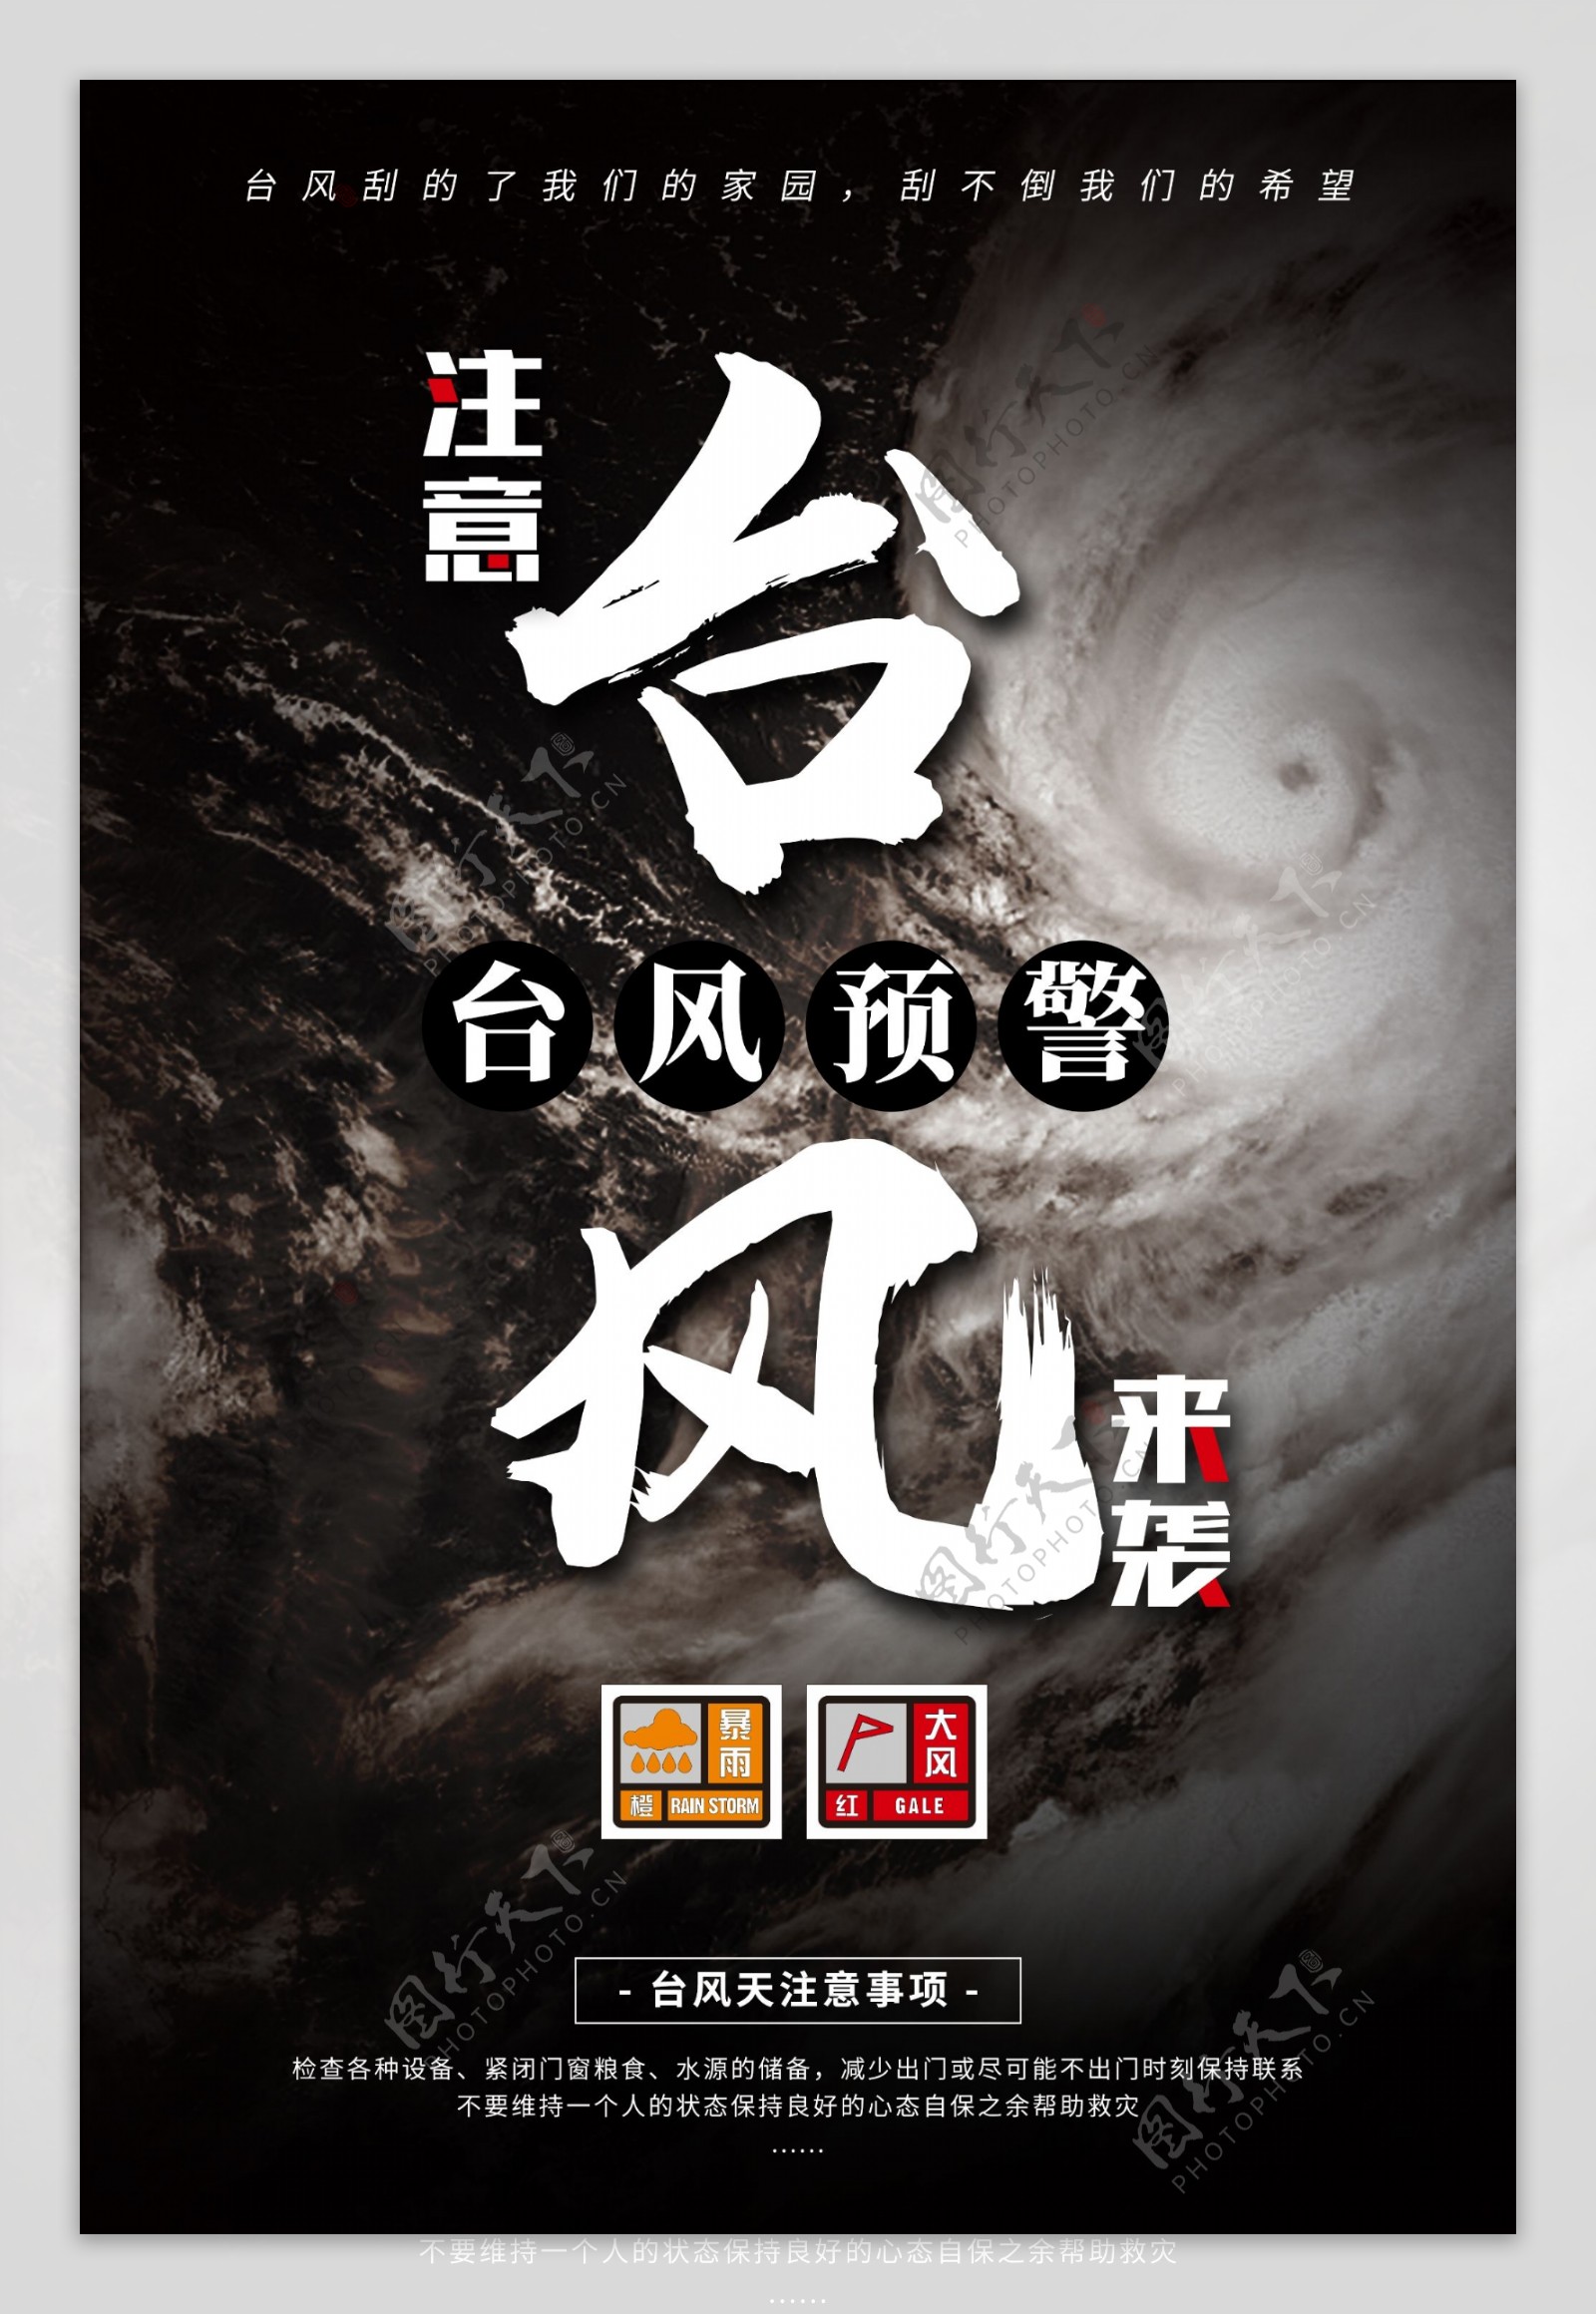 台风预警海报